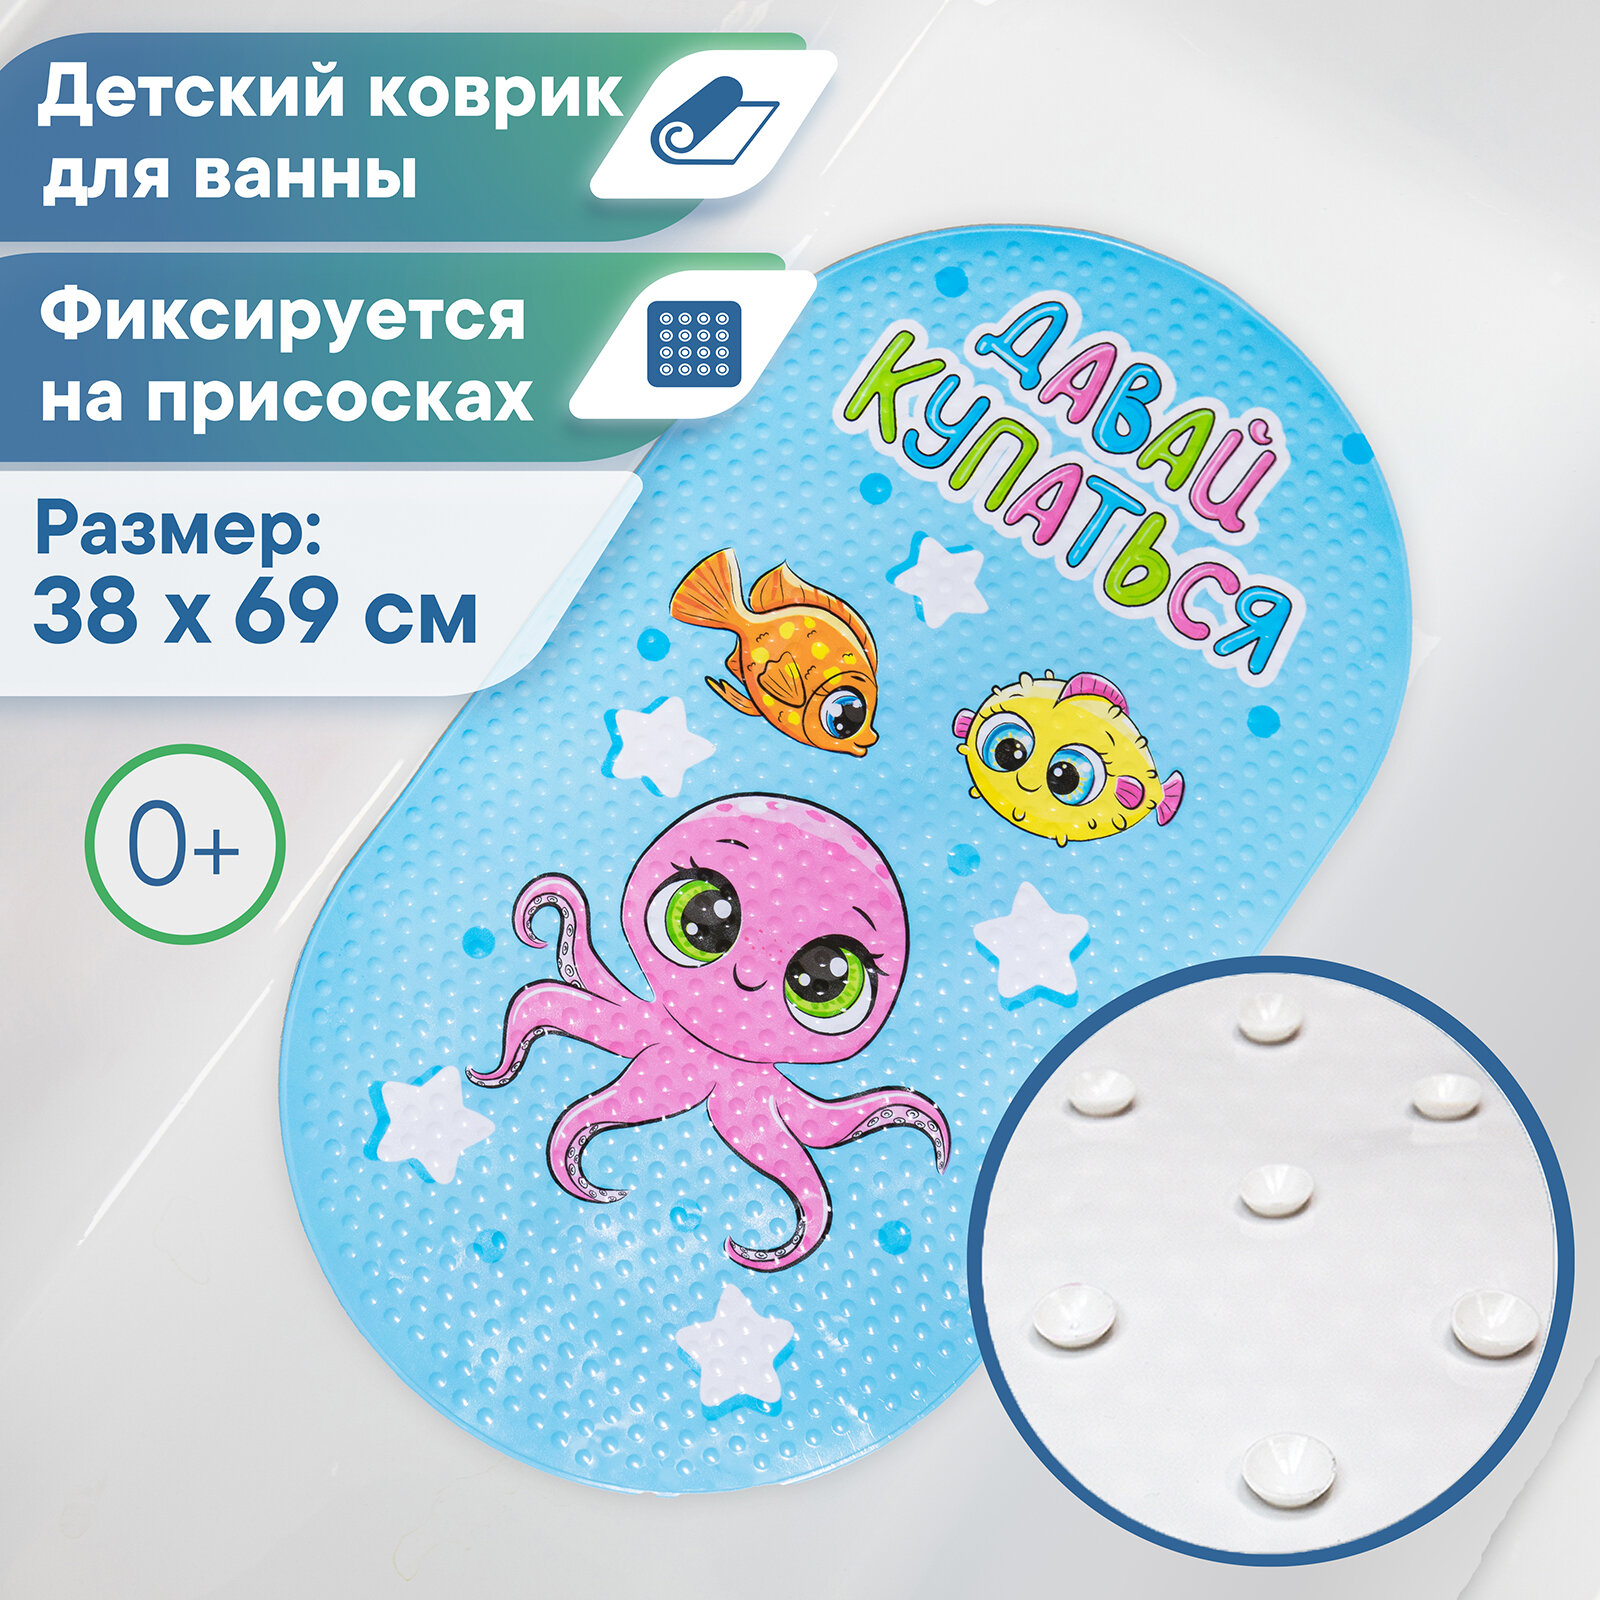 Детский коврик для ванны VILINA "Bubbles kids" массажный с присосками противоскользящий 38х69 см.